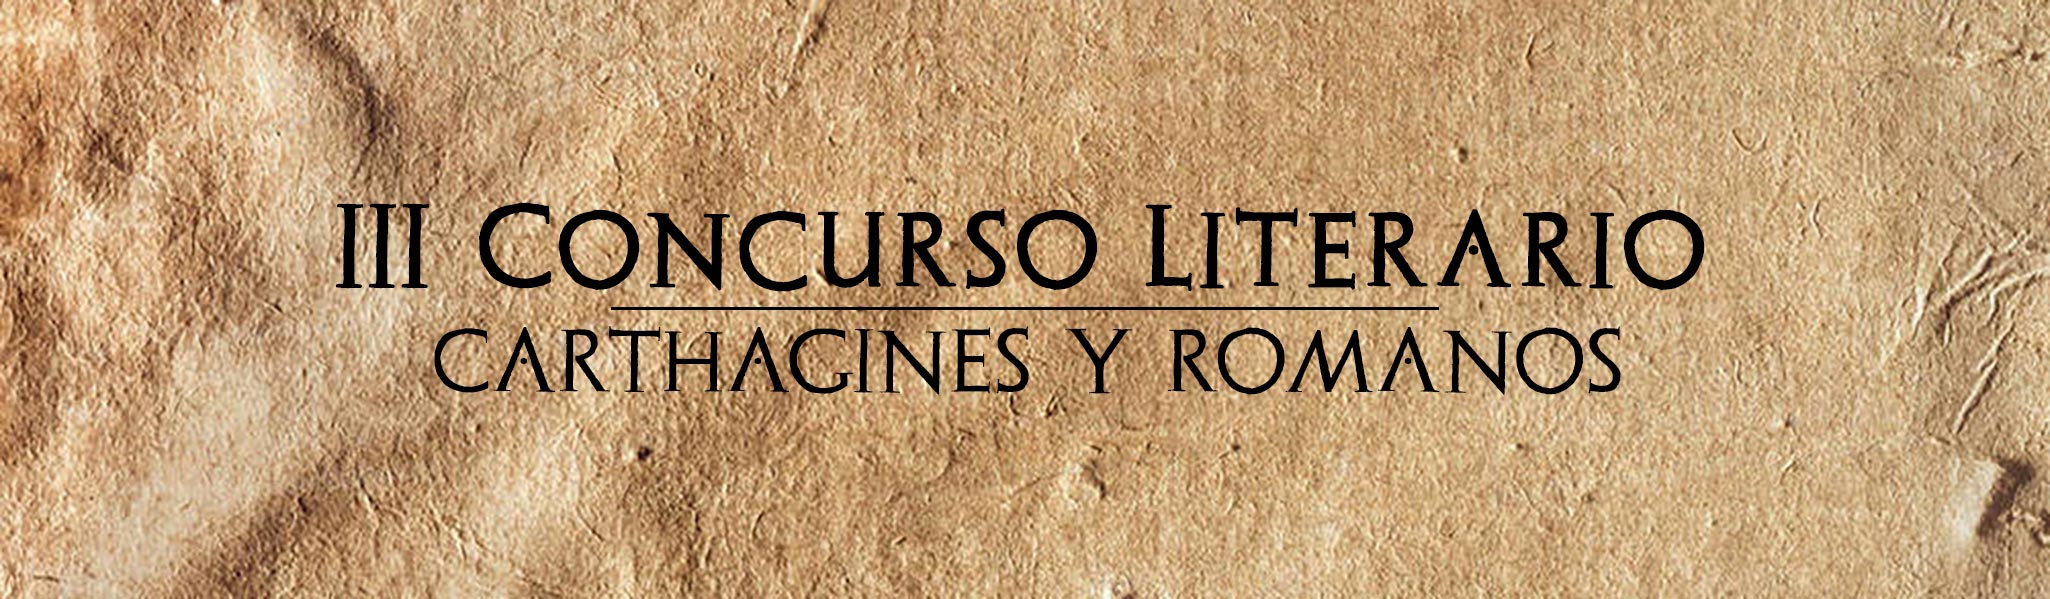 III Concurso Literario Fiestas de Carthagineses y Romanos